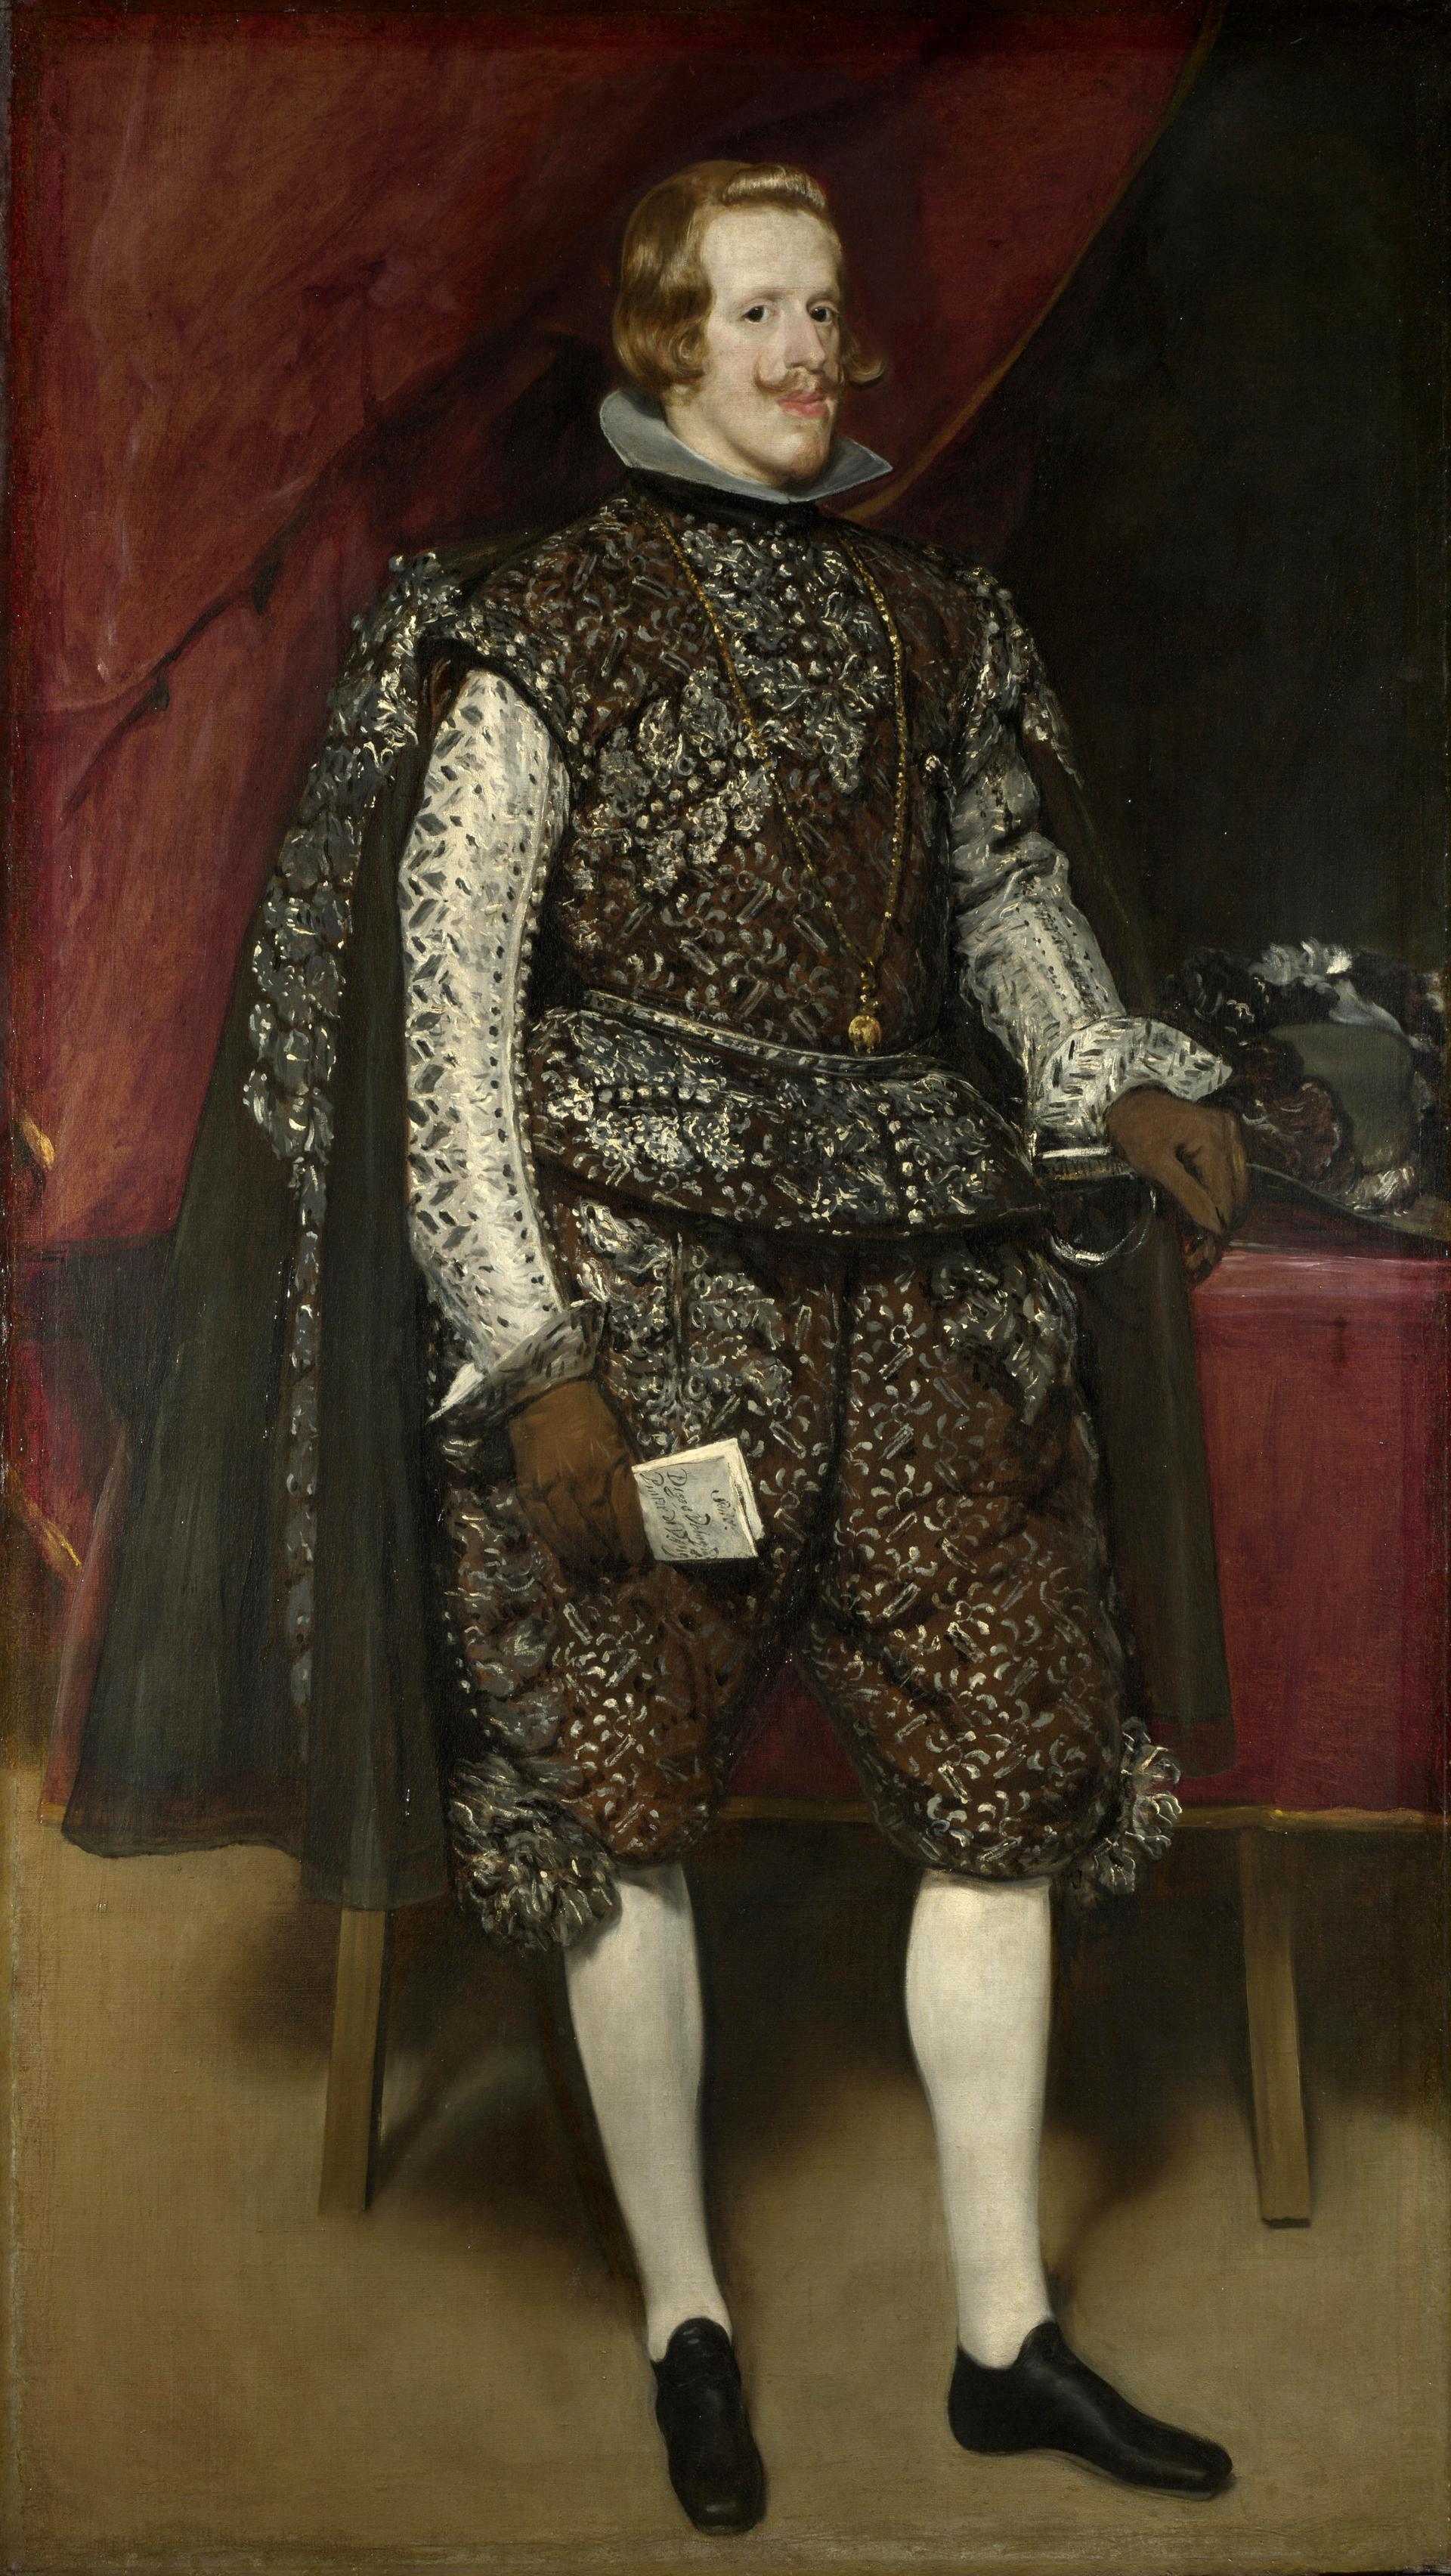 0028_委拉斯开兹_委拉斯开兹绘画作品集-Diego Velazquez - Philip IV of Spain in Brown and Silver_2381x4226PX_TIF_300DPI_29_0